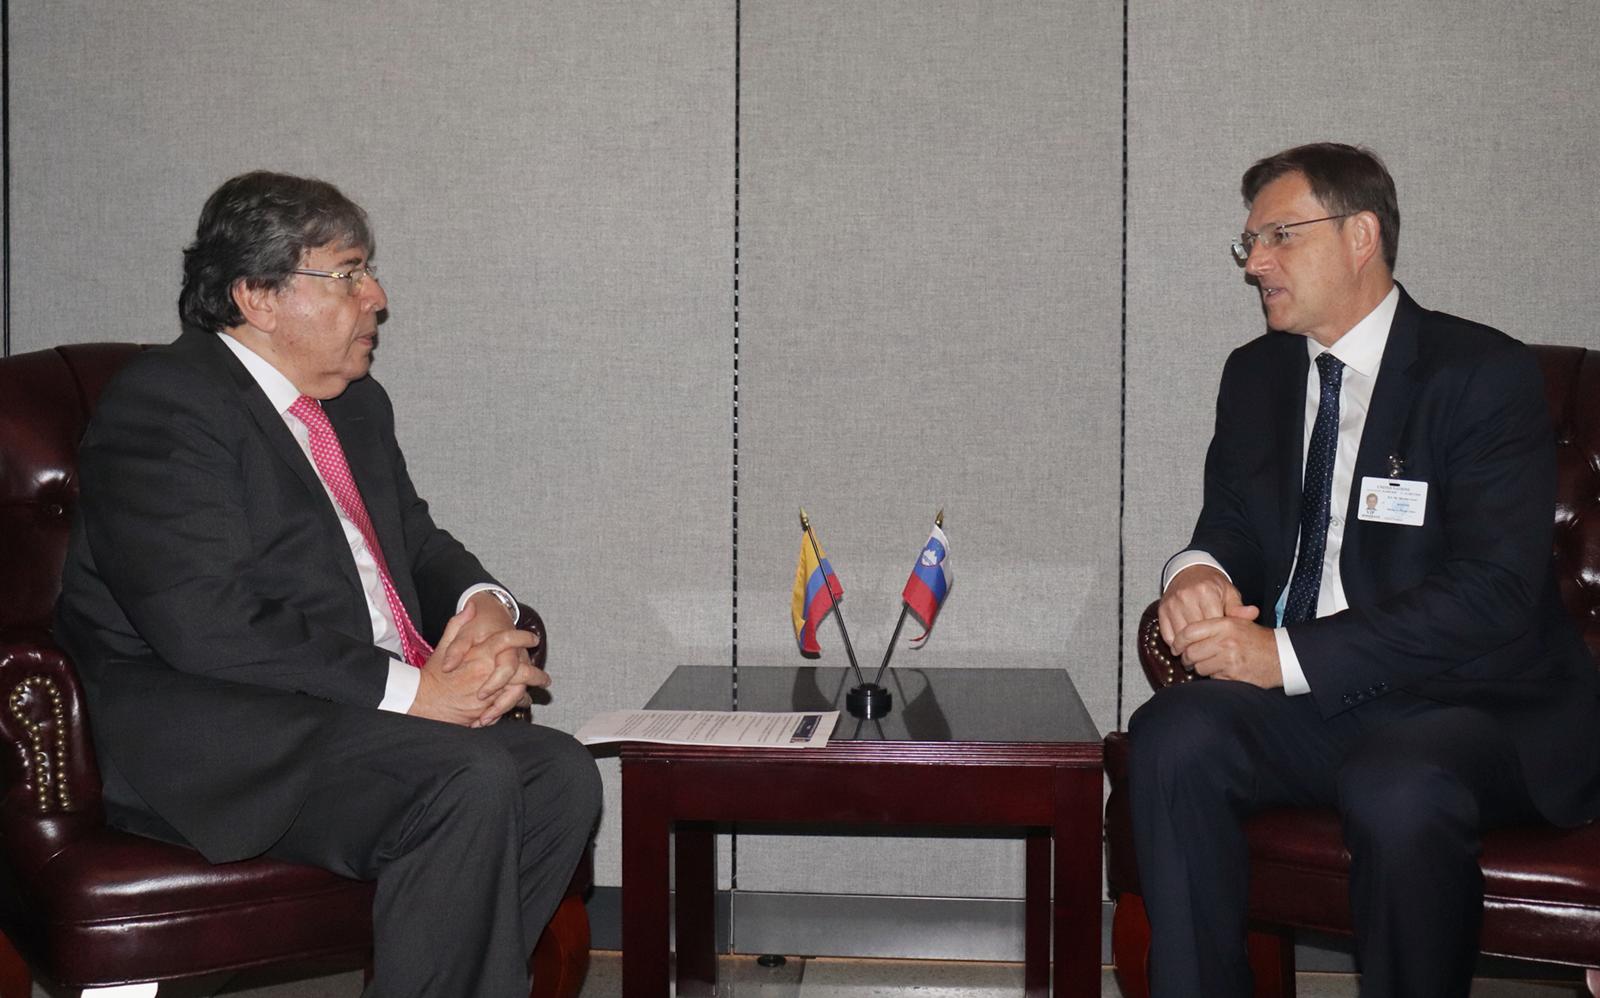 Ministros de Relaciones Exteriores de Colombia y Eslovenia sostuvieron encuentro bilateral en el marco de Asamblea General de las Naciones Unidas